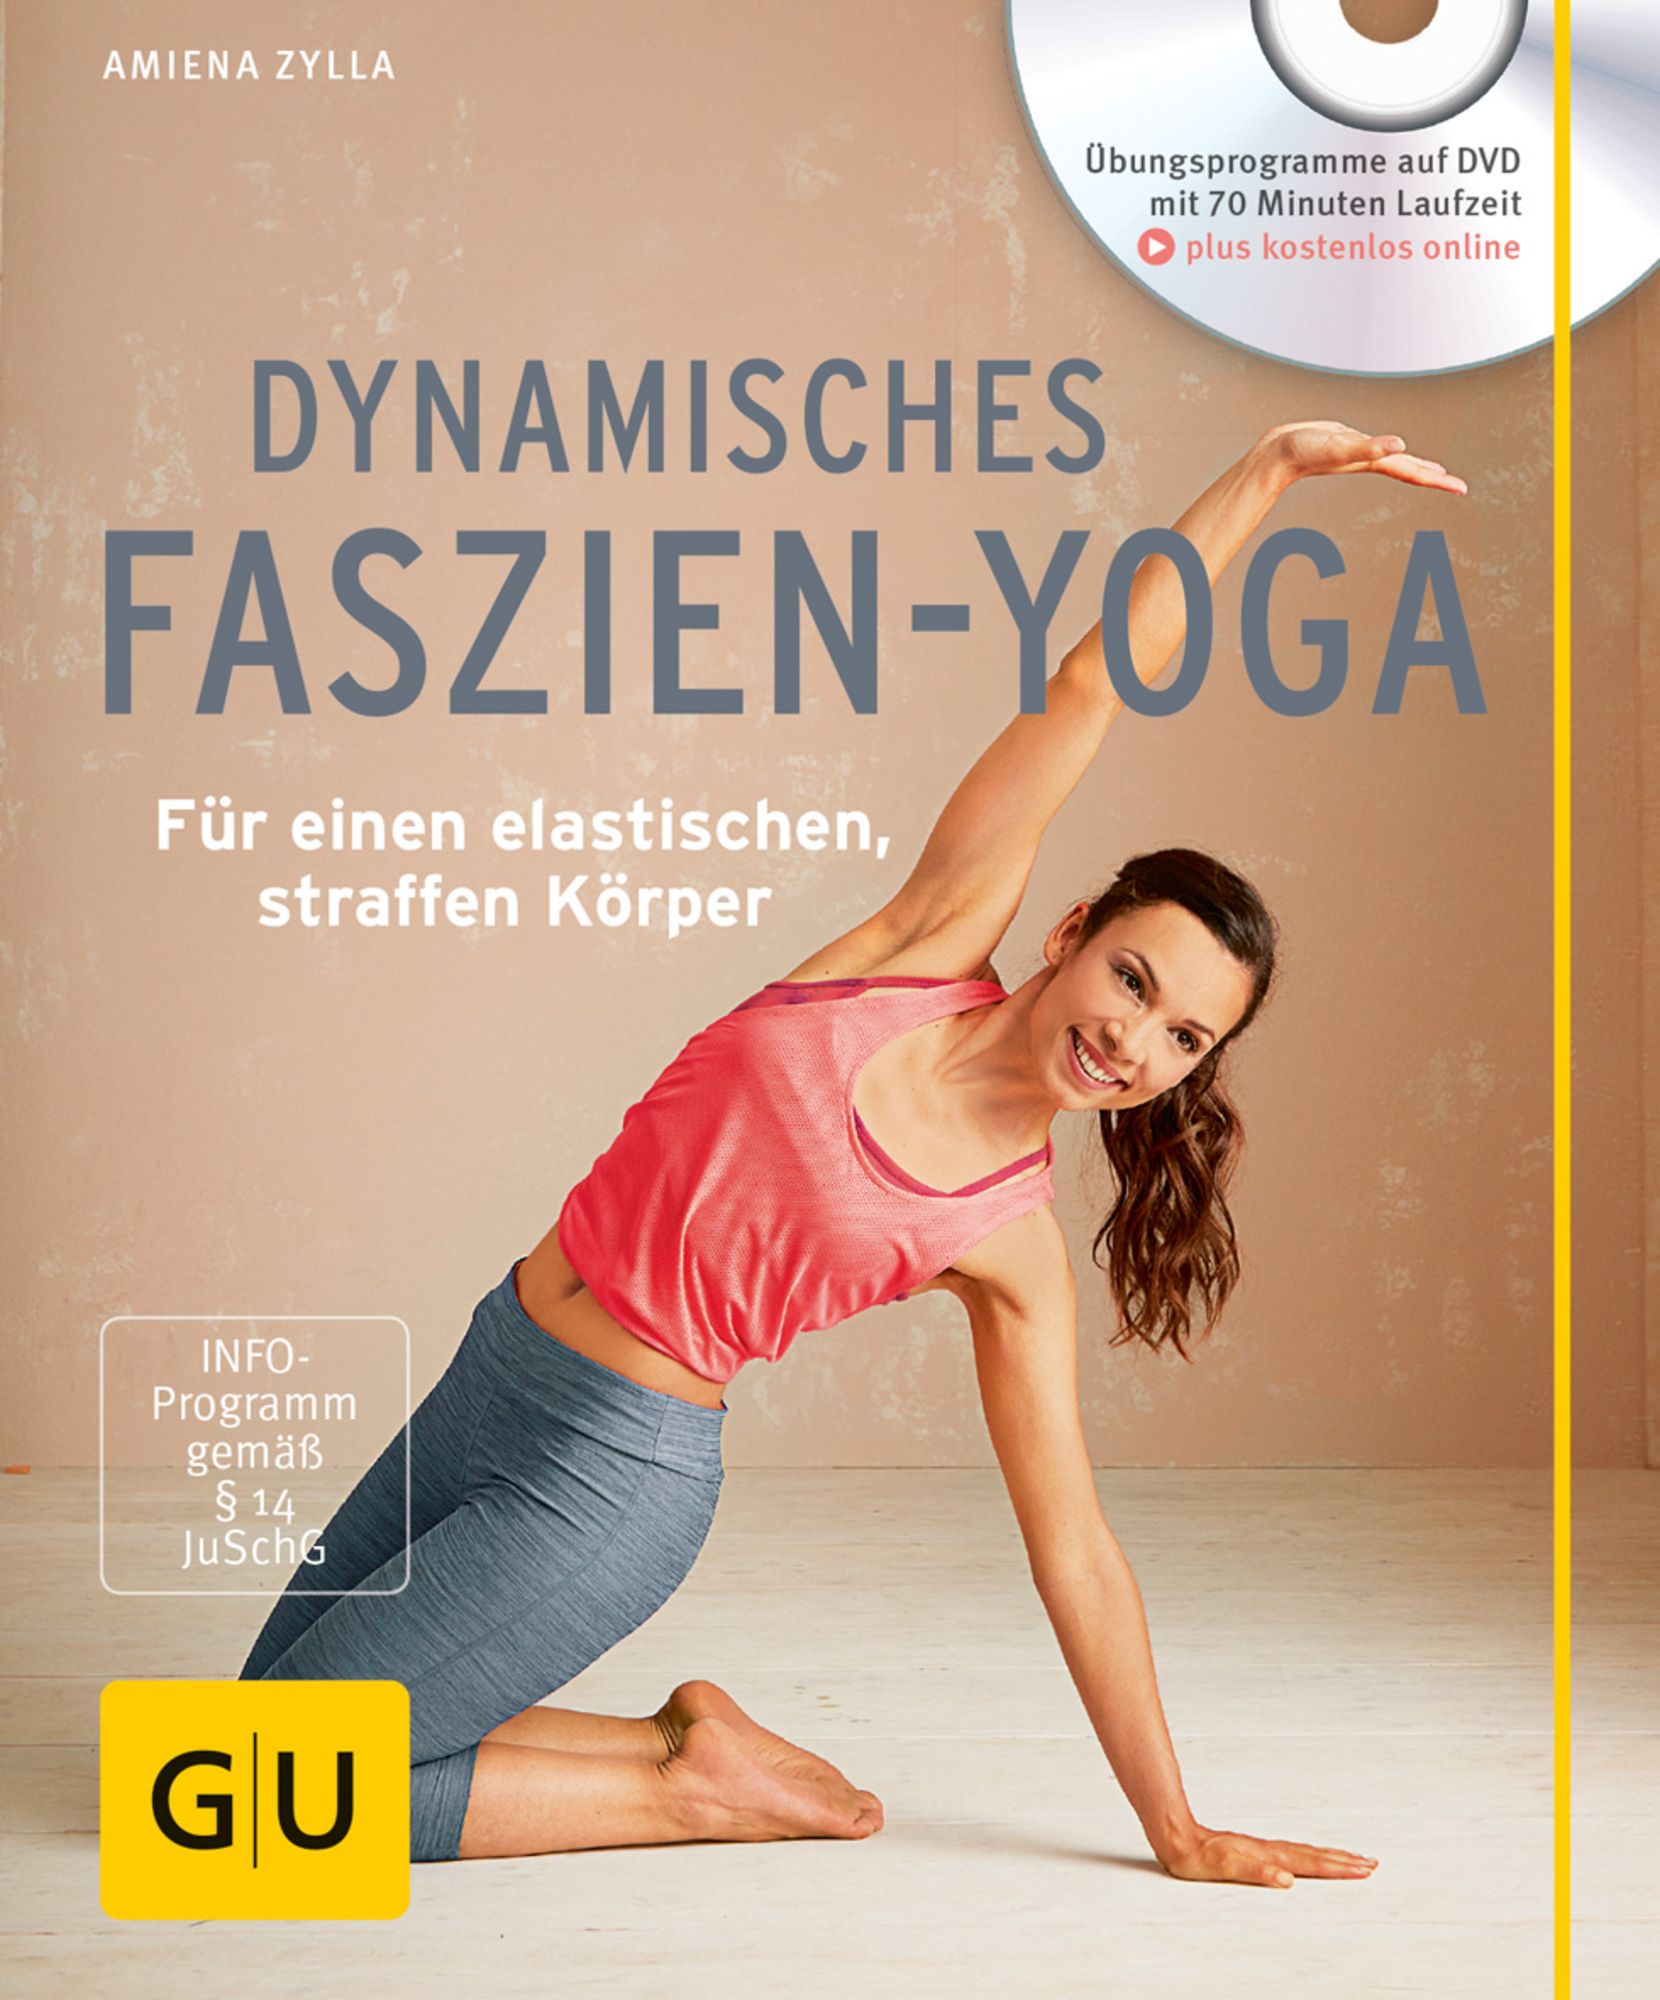 Yoga-Kleidung von Liebestoll im Women30plus-Test - Online Magazin